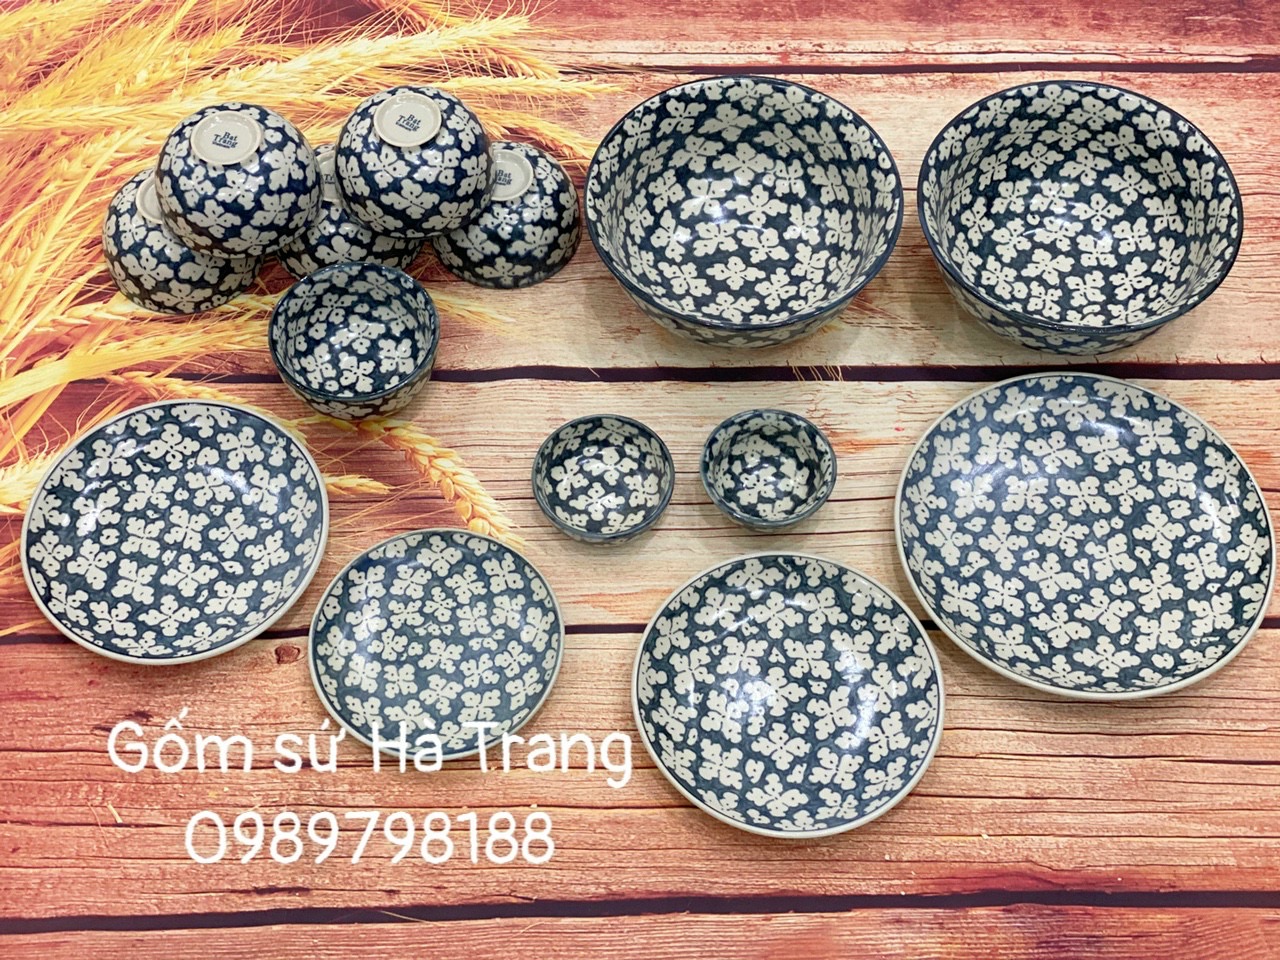 Bộ bát đĩa gốm sứ Bát Tràng cao cấp không chì men rạn vẽ hoa bèo hàng xuất dư cao cấp